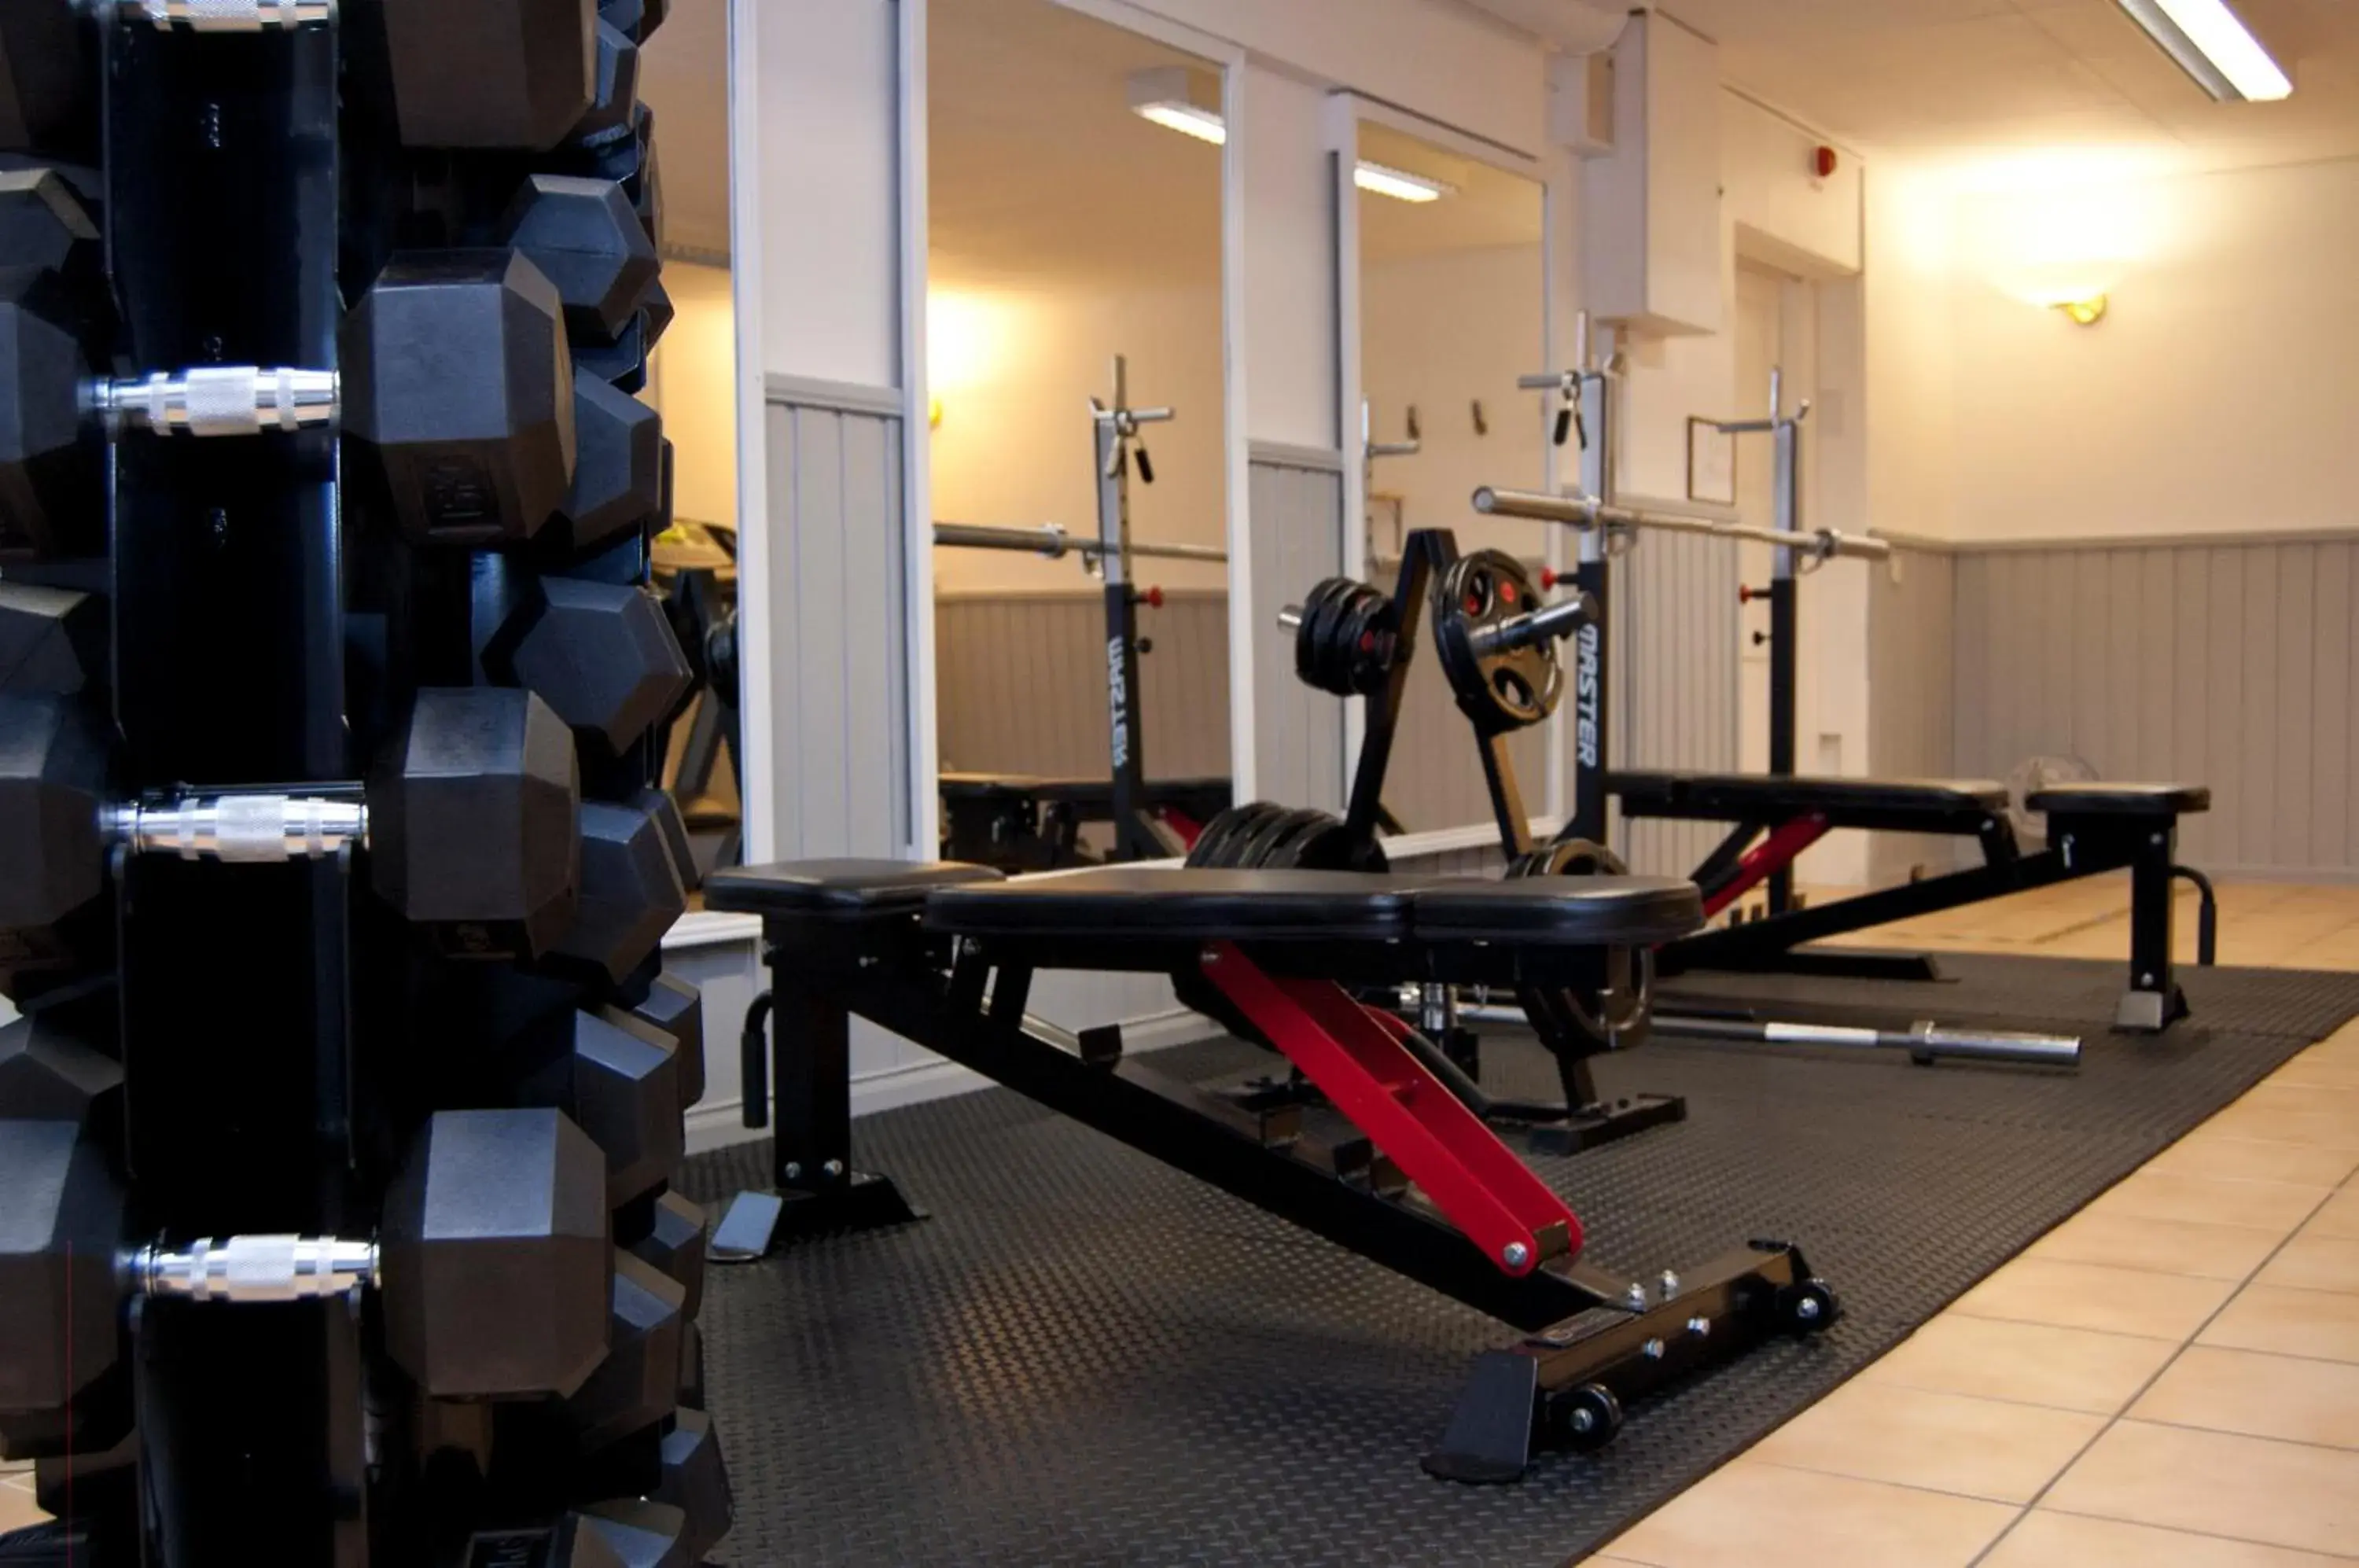 Fitness centre/facilities, Fitness Center/Facilities in Hotell Kung Gösta